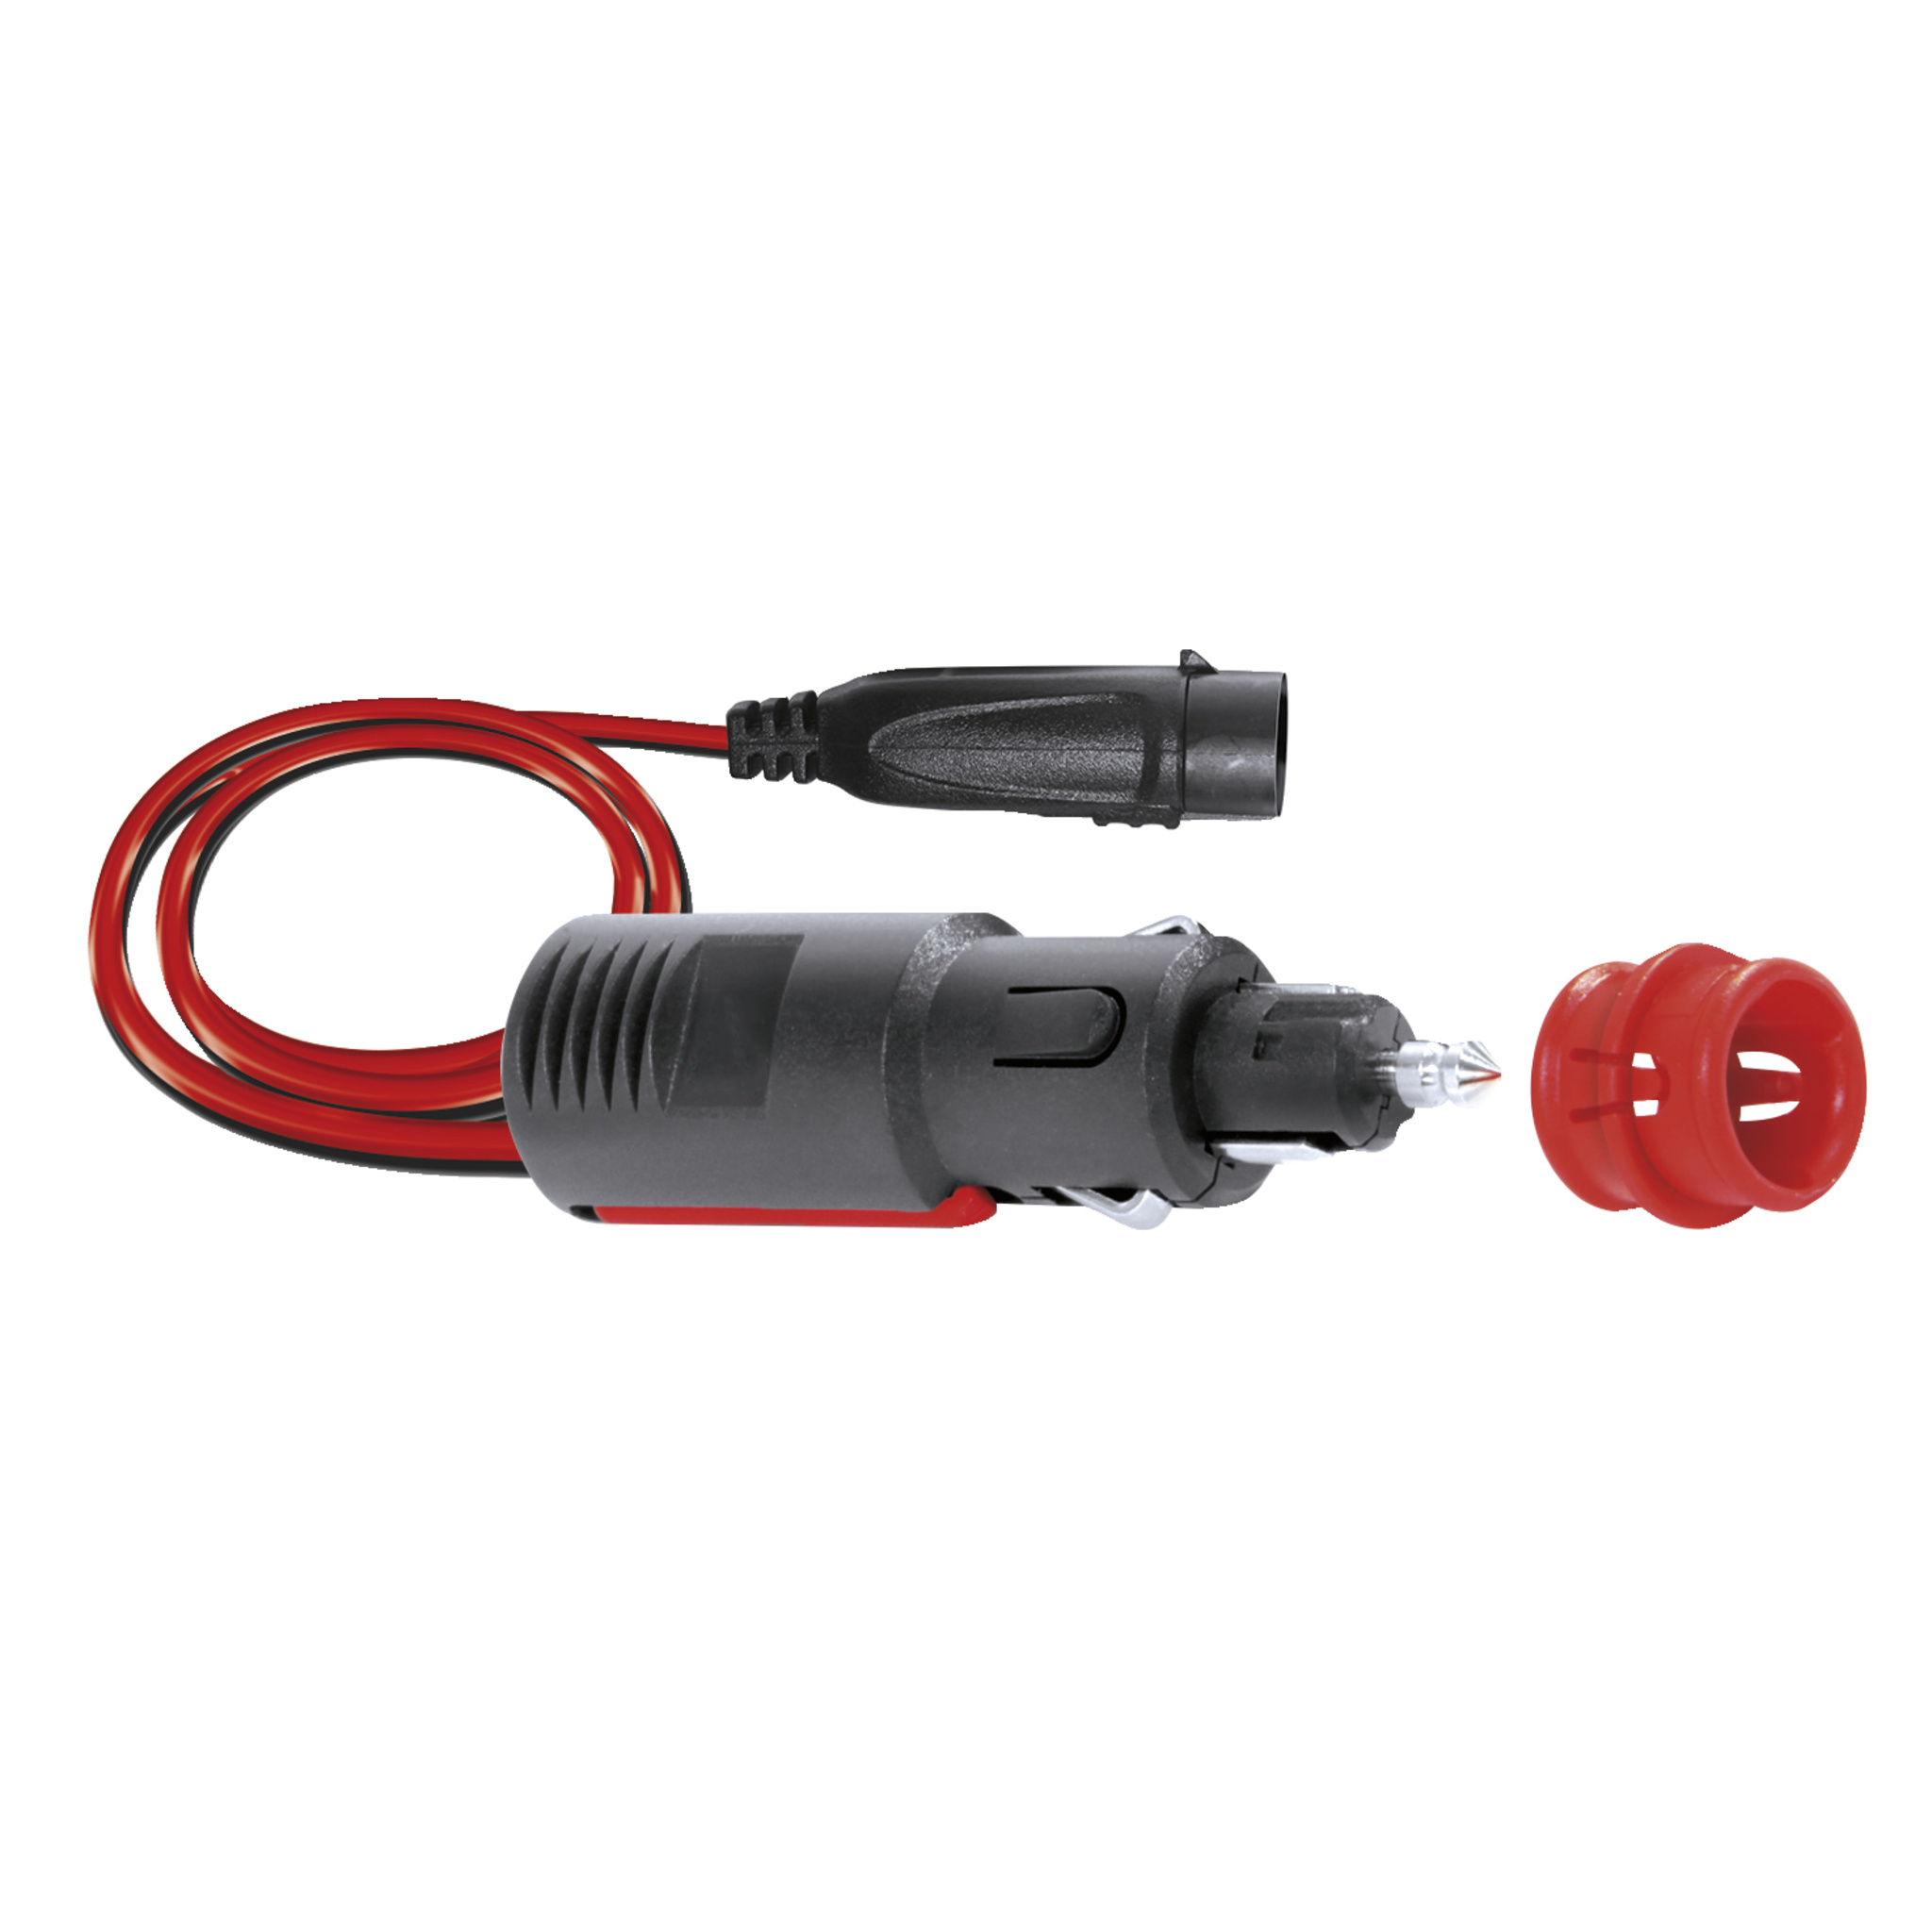 KIT F5 kabel met flash connector en sigarettenaansteker plug